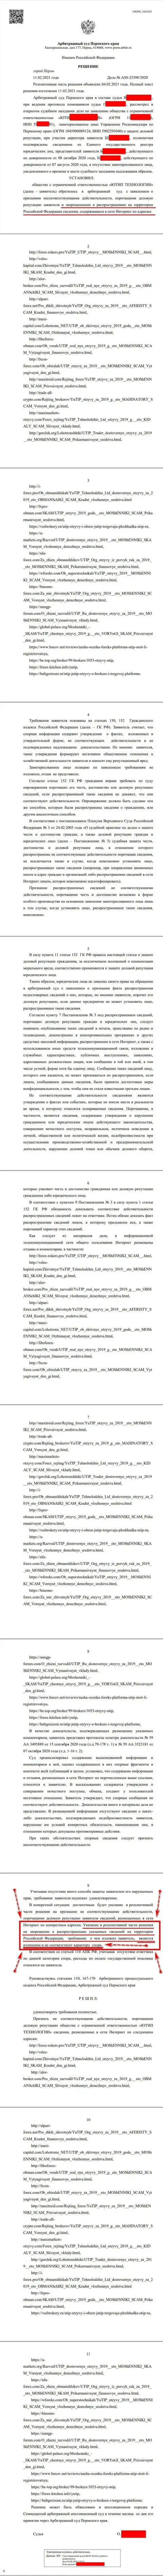 Решение Арбитражного суда г. Перми по судебному иску мошенников UTIP Org в отношении веб-ресурса Forex-Brokers.Pro